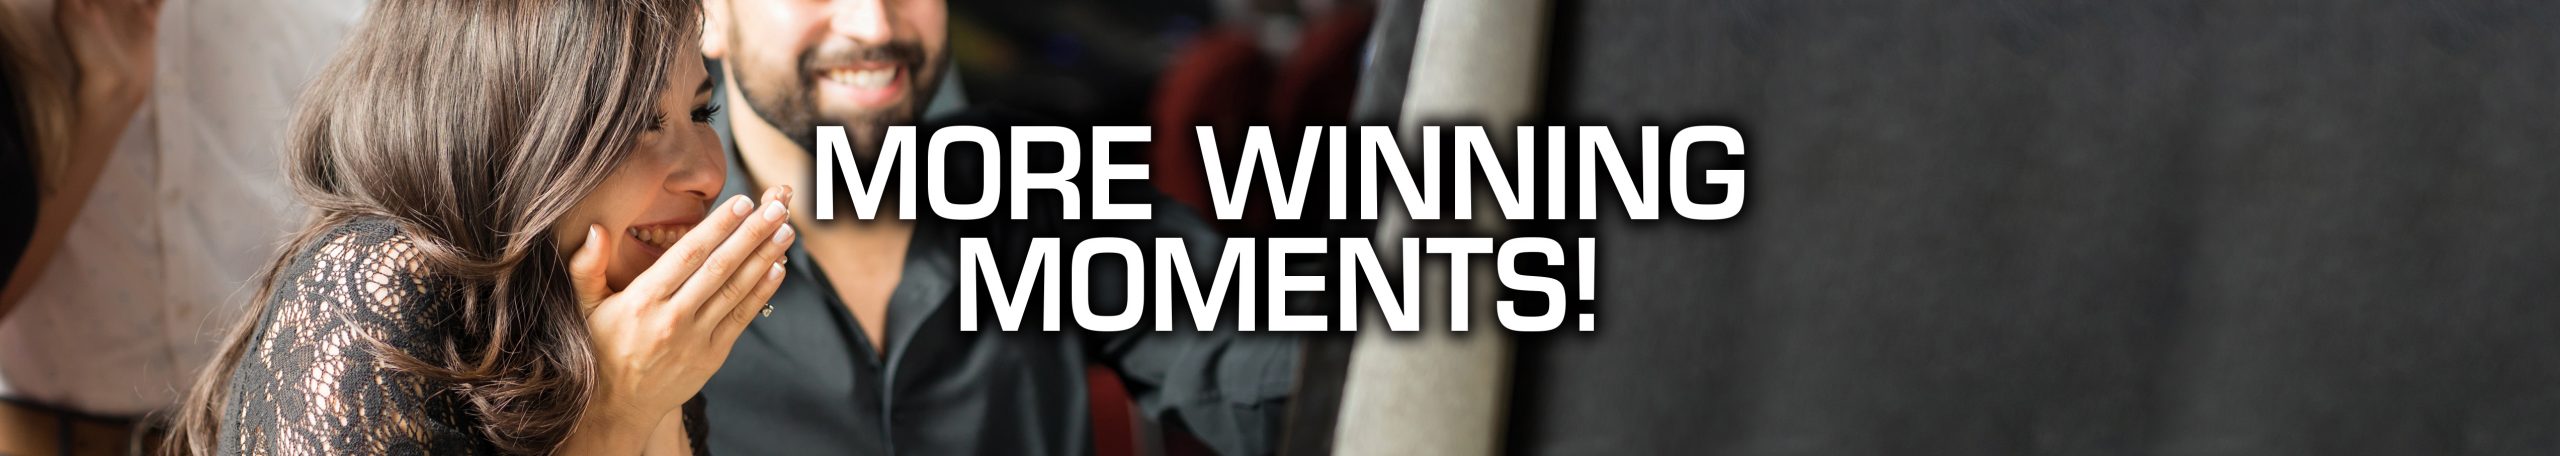 Woman winning at slot machine - PWC More Winning Moments!